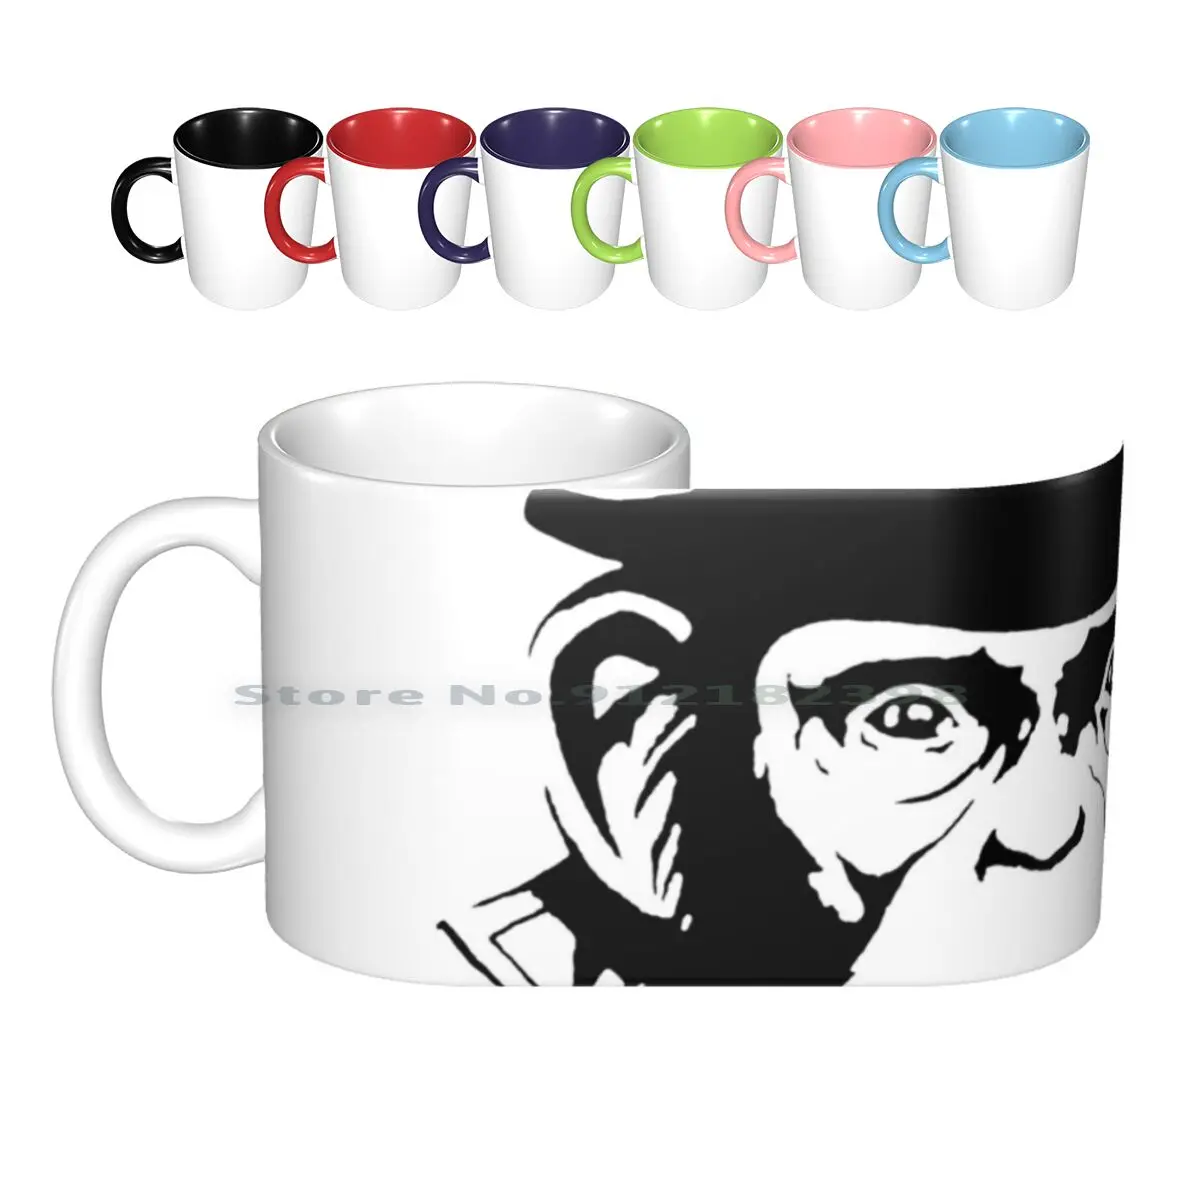 

Керамические кружки Link Chimp Face, кофейные чашки, Кружка для молока и чая, кружка Link Secret Chimp Chimpanzee Monkey Tv T V Show, классический креативный тренд